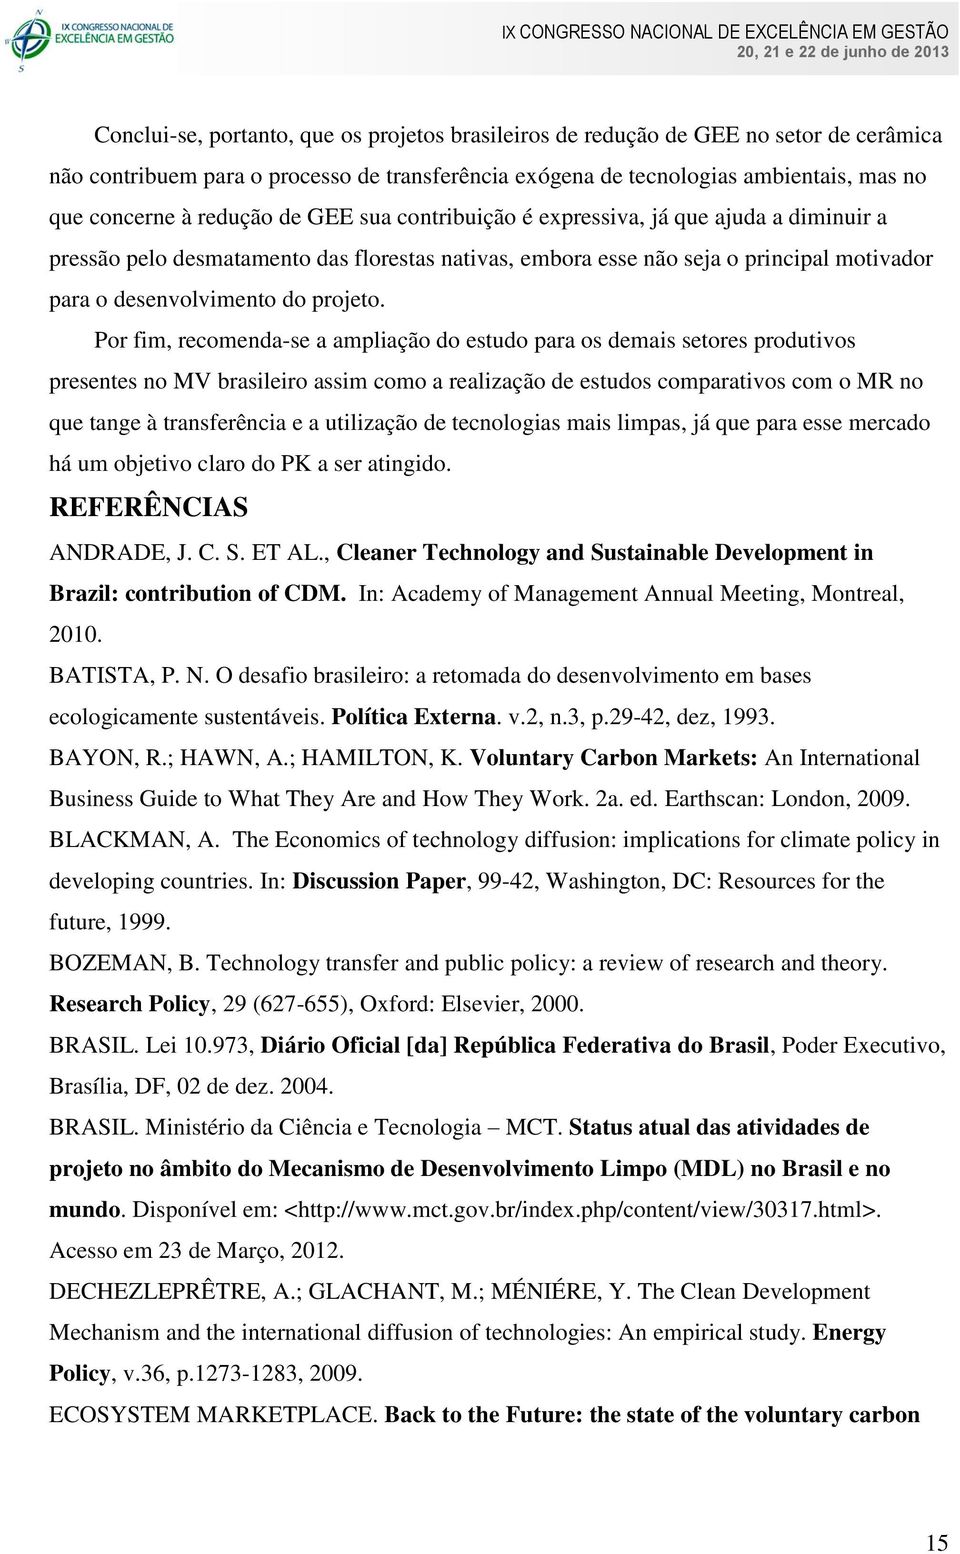 Por fim, recomenda-se a ampliação do estudo para os demais setores produtivos presentes no MV brasileiro assim como a realização de estudos comparativos com o MR no que tange à transferência e a